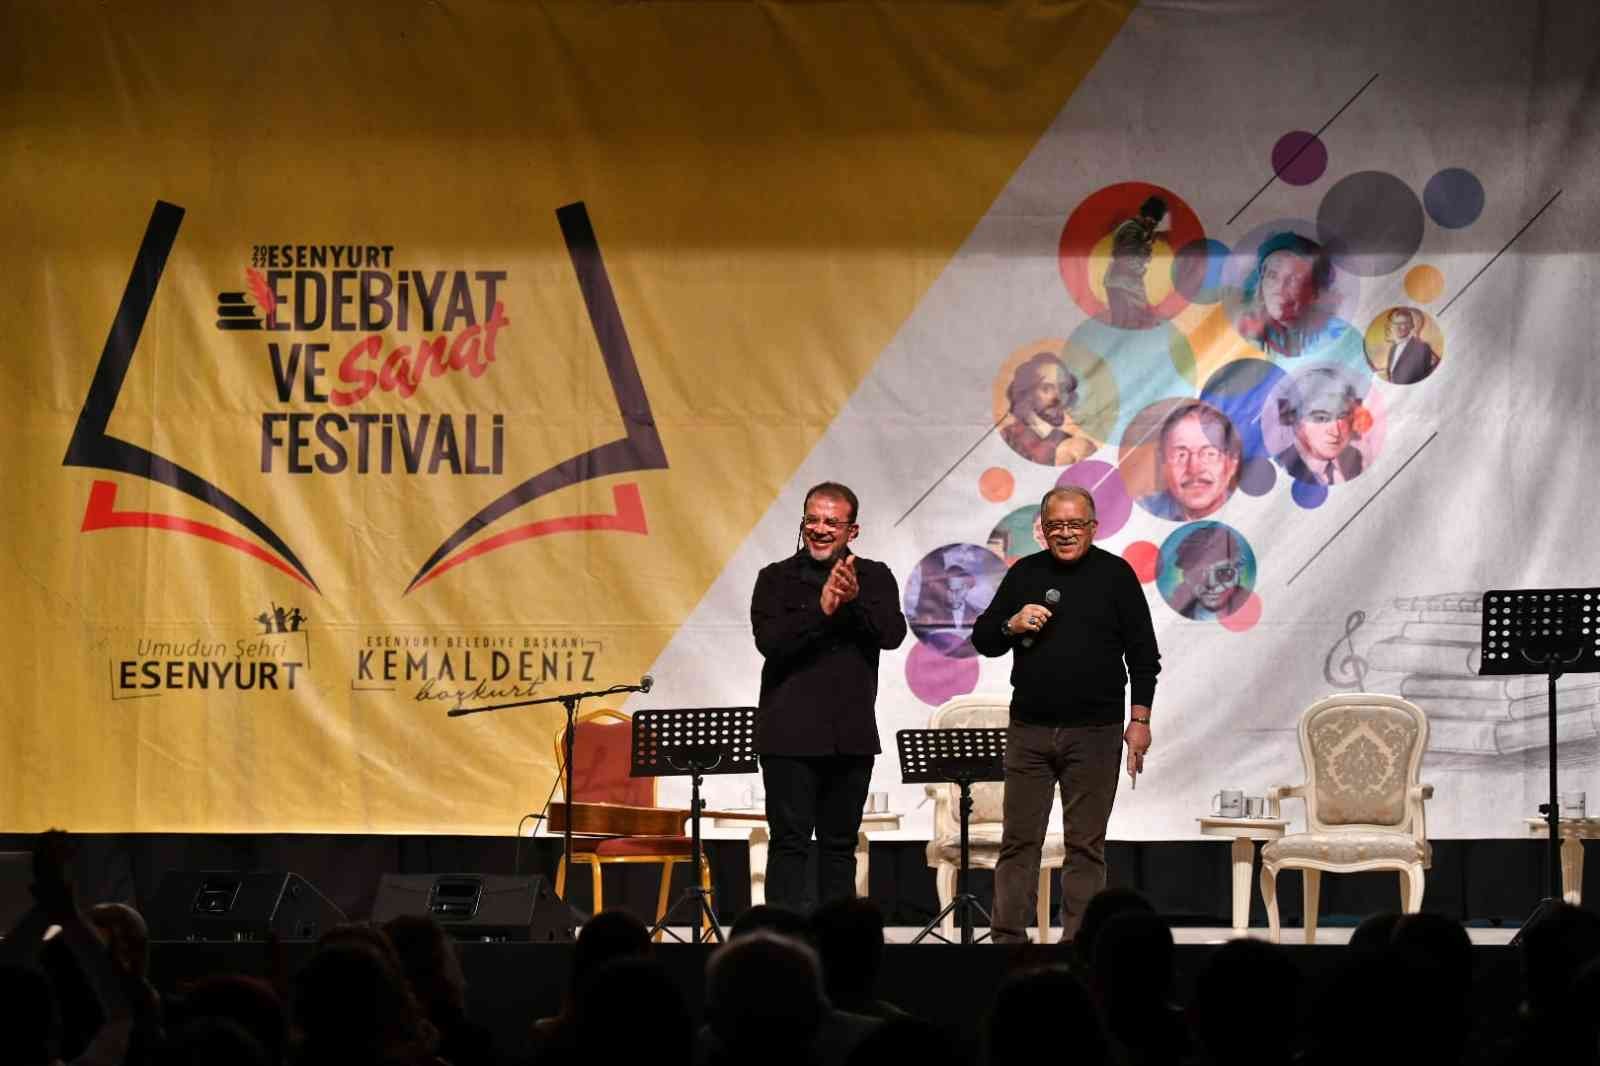 Edebiyat ve Sanat Festivali’nde Ahmet Arif anıldı #istanbul